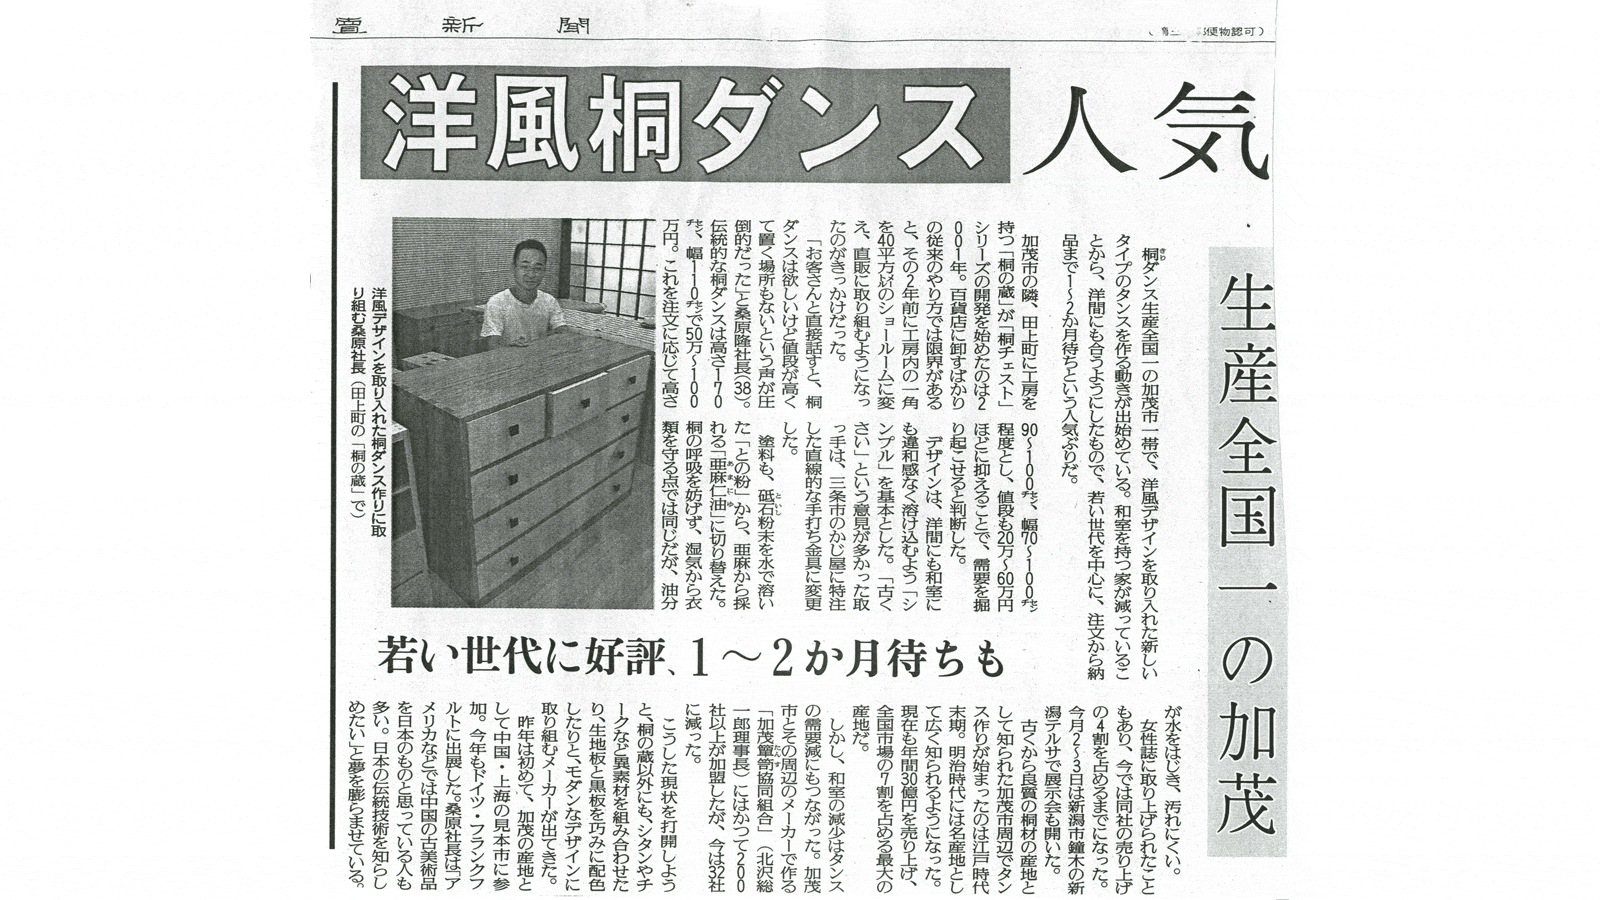 2006年9月8日 読売新聞取材